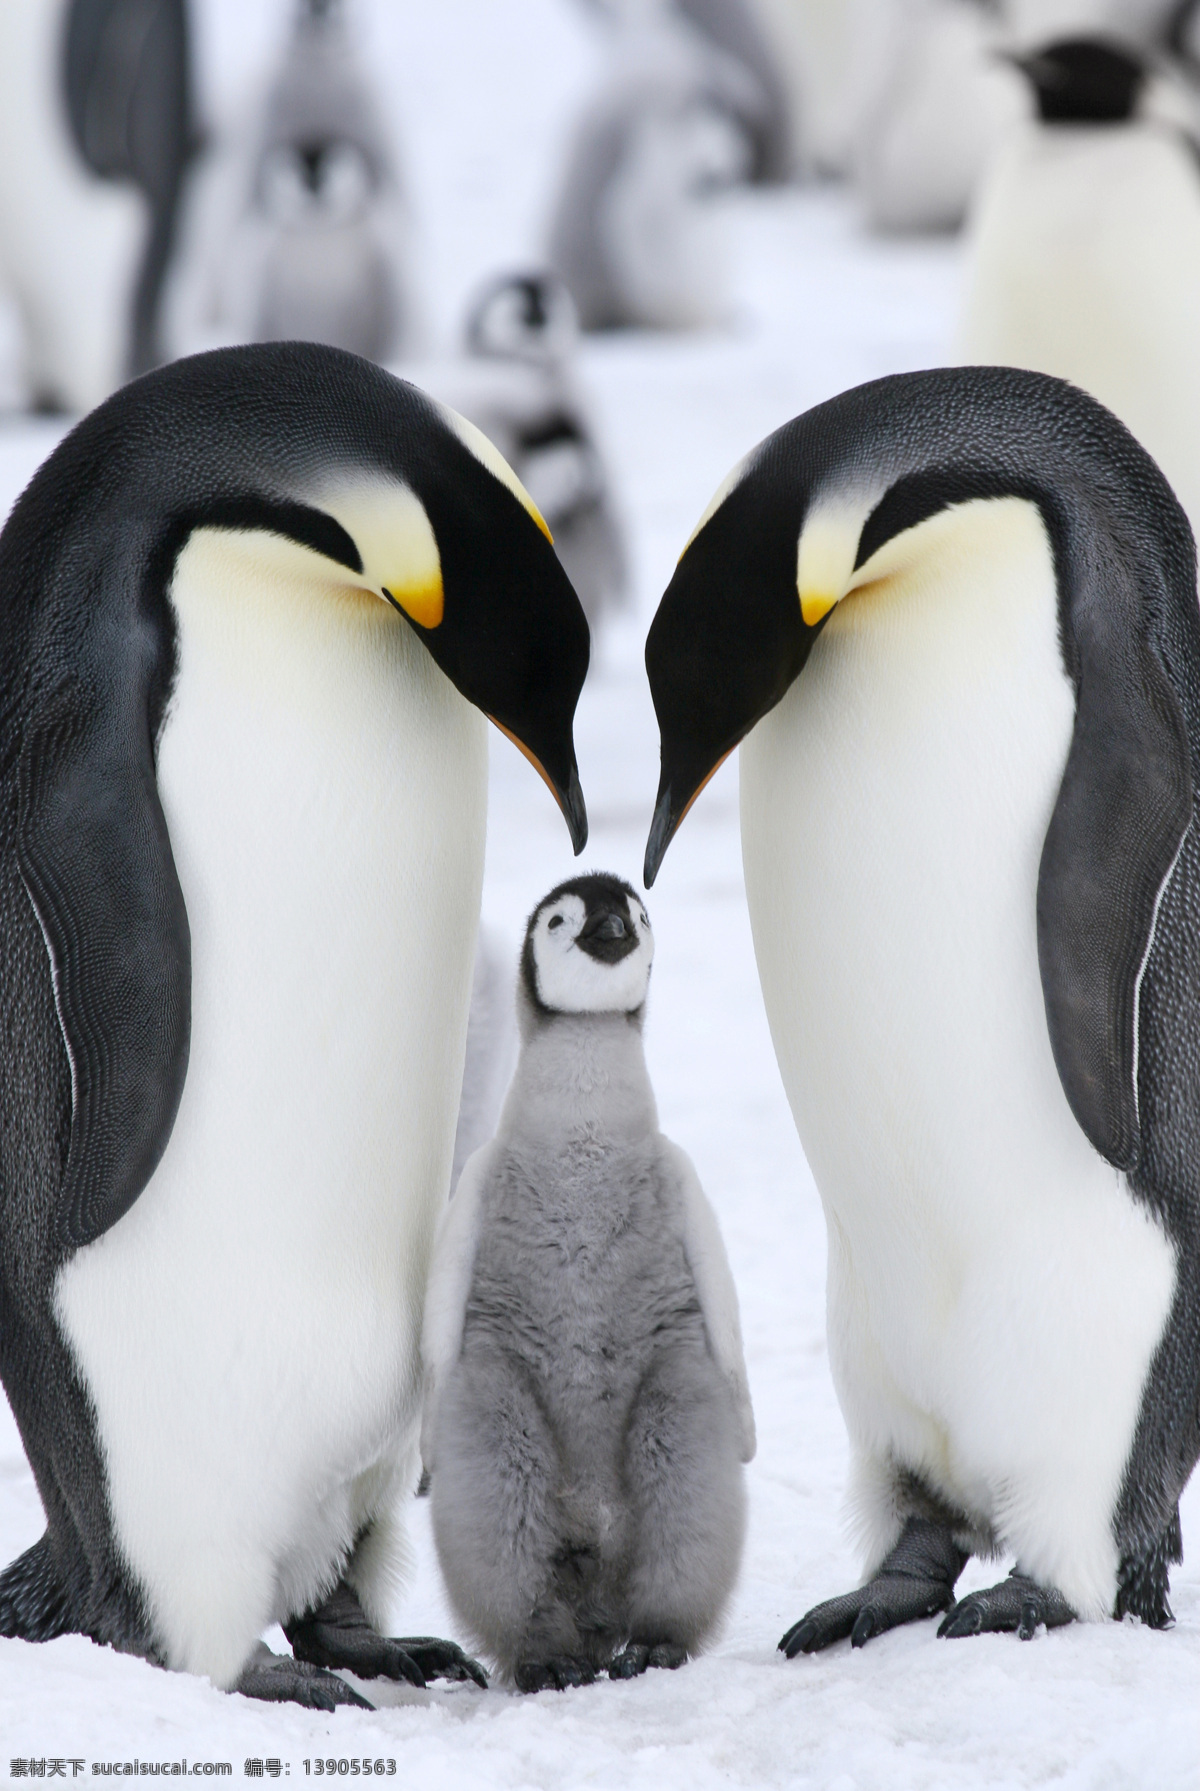 企鹅 冰山 冰天雪地 动物摄影 南极企鹅 企鹅群 企鹅素材 野生动物 生物世界